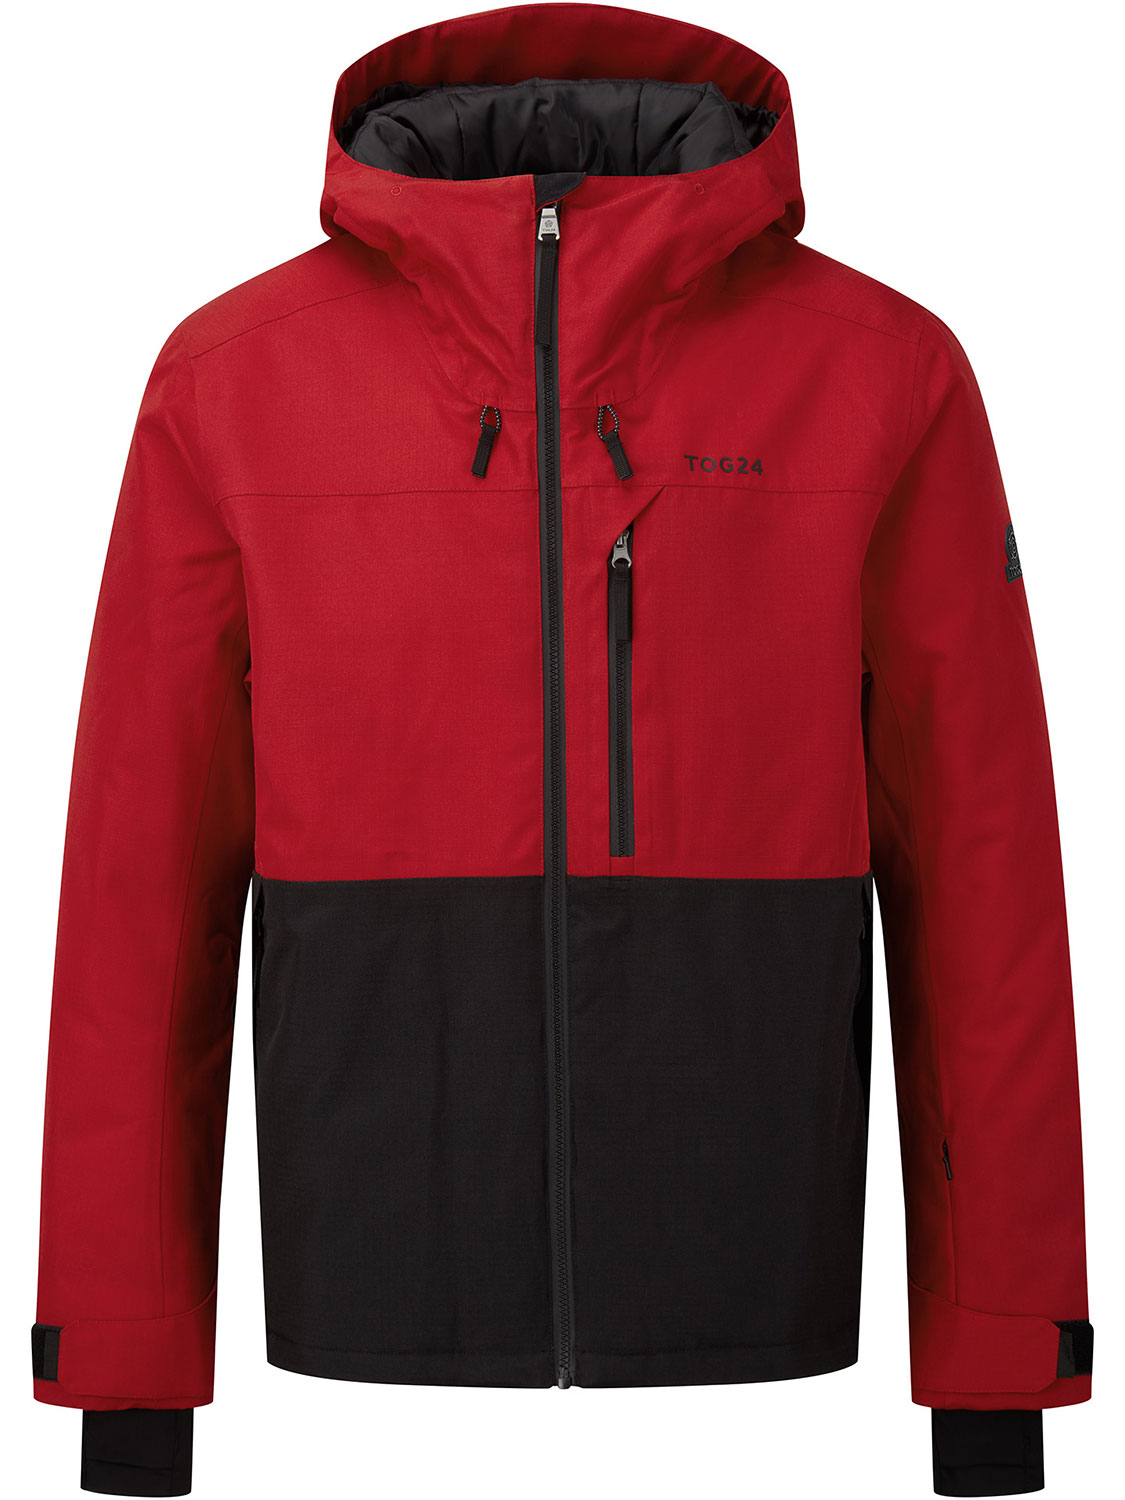 Hail Ski Jacket - Size: Medium Men’s Red Tog24